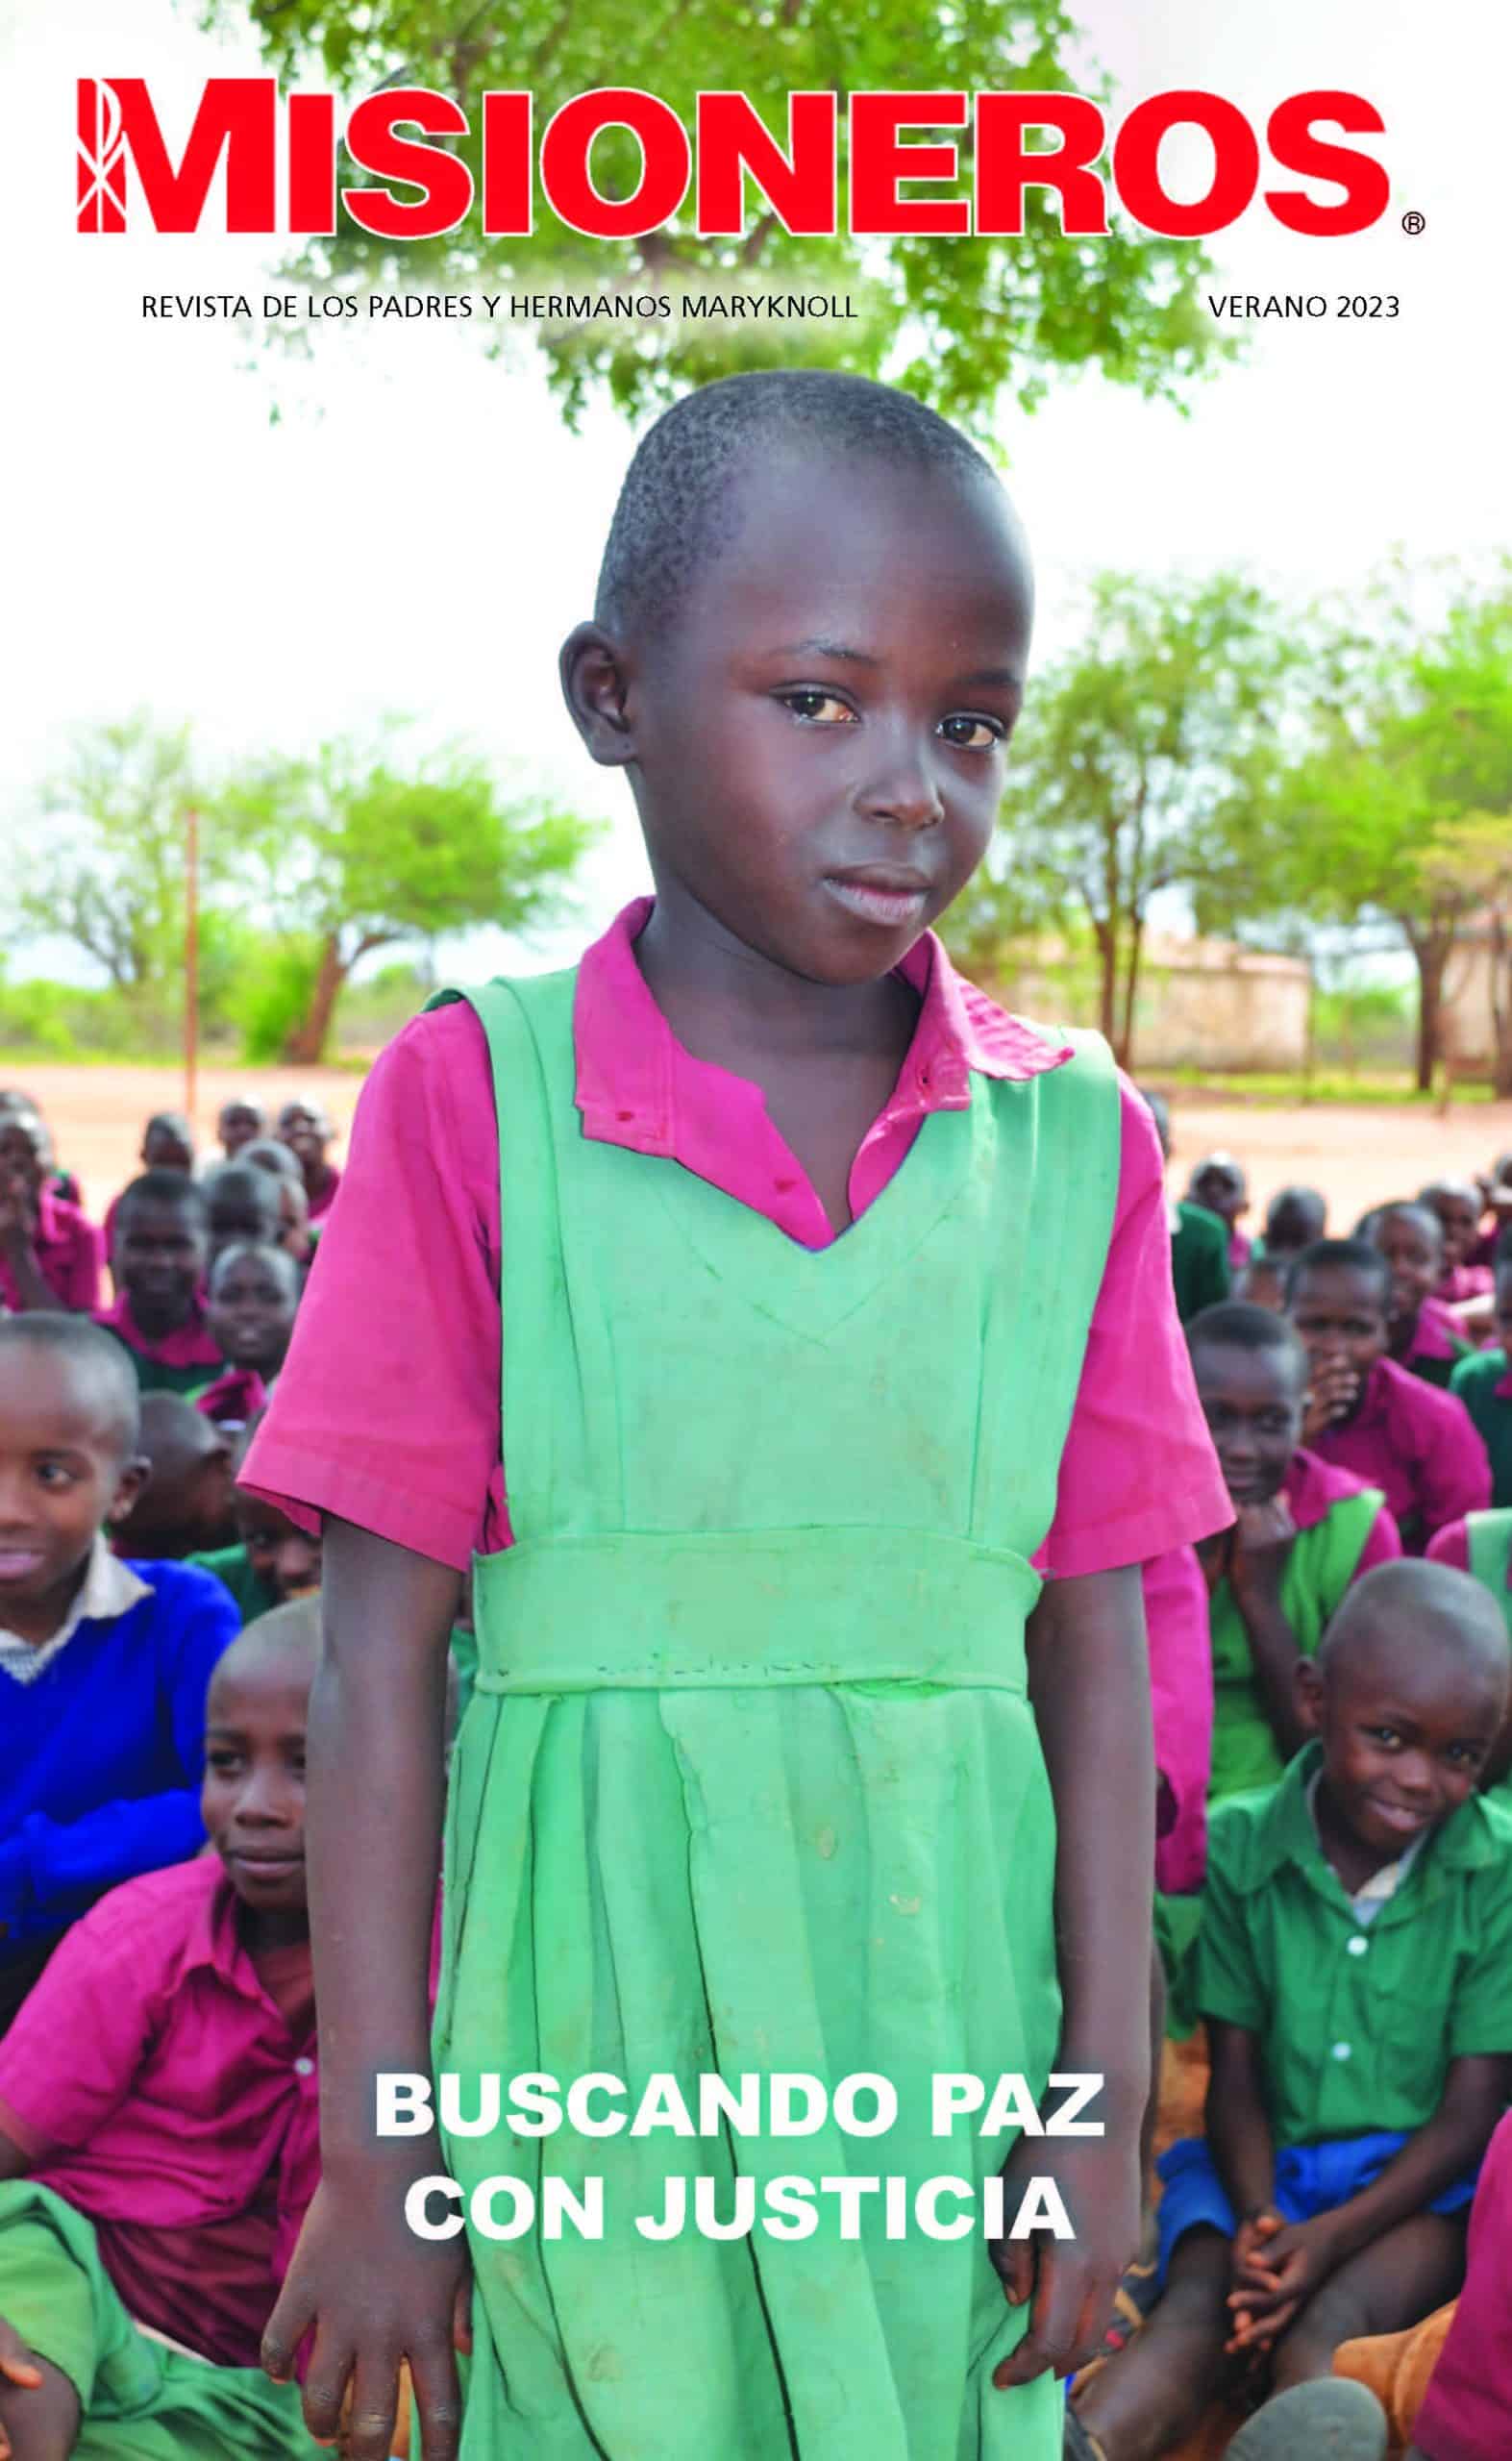 Una niña y sus compañeros de estudios reciben ayuda en educación y alimentos de los Padres y Hermanos Maryknoll en Kenia. (Moses Njagua Gitahi/Kenia)